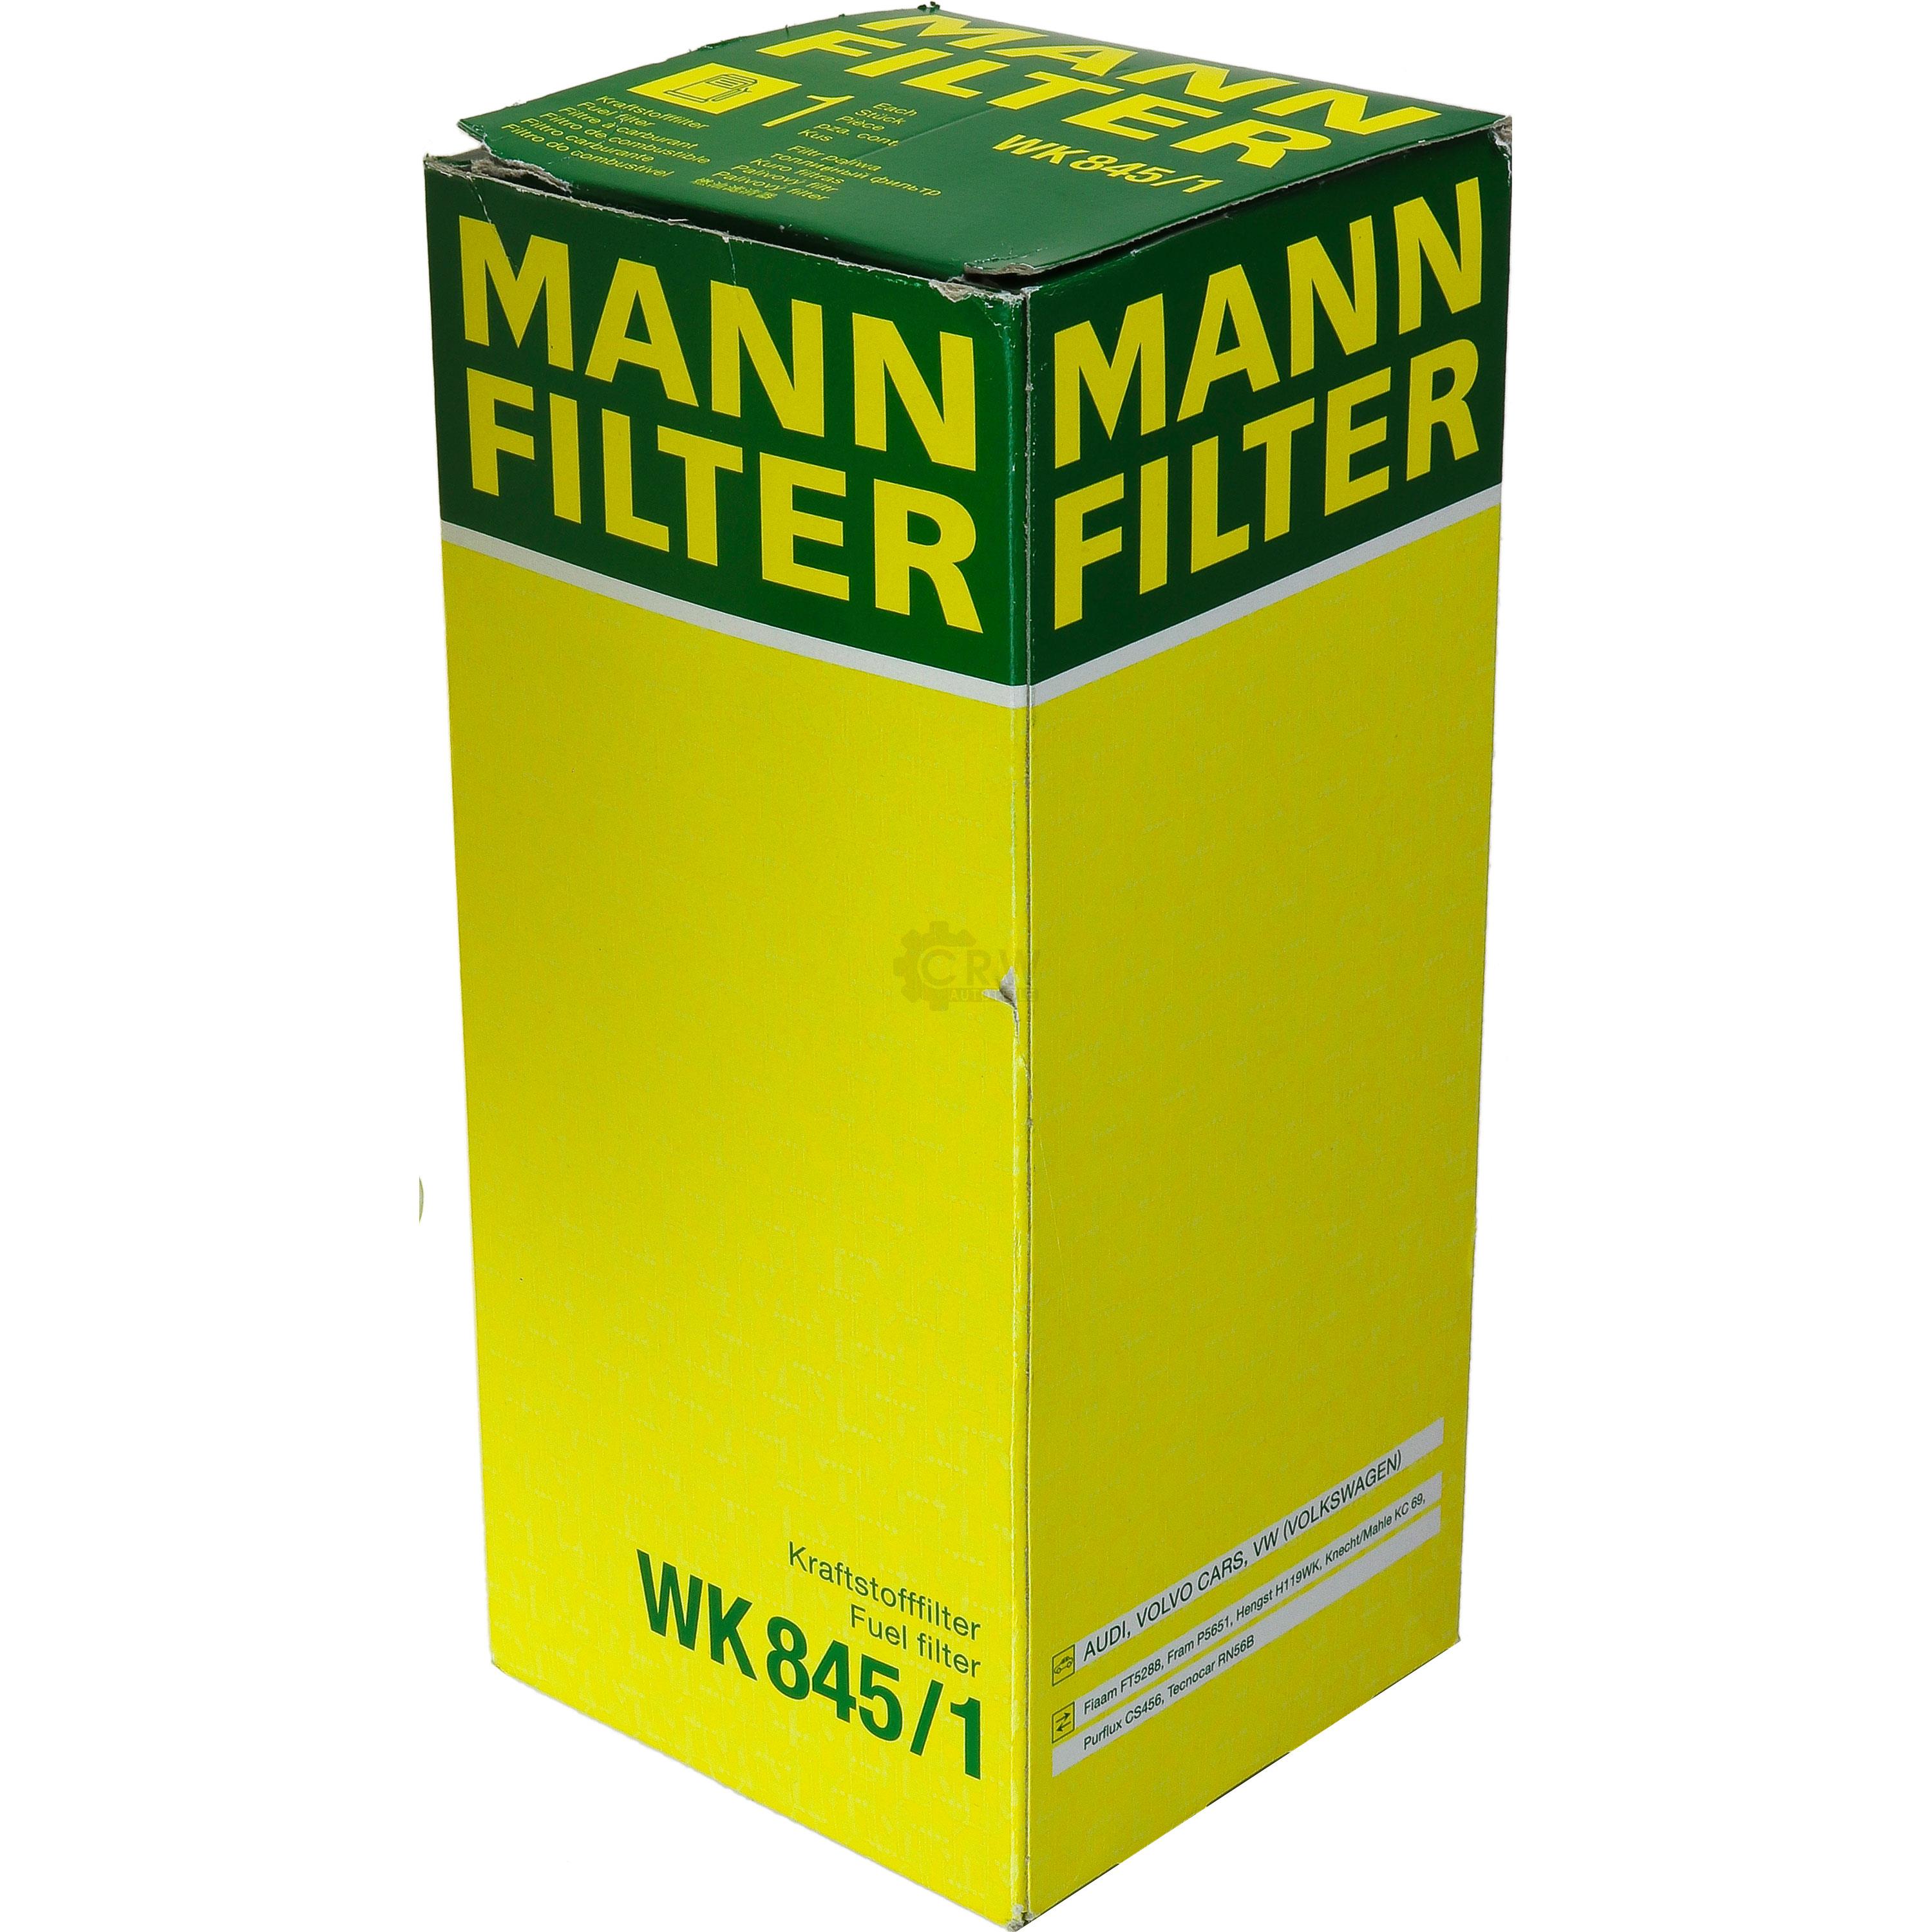 MANN-FILTER Kraftstofffilter WK 845/1 Fuel Filter